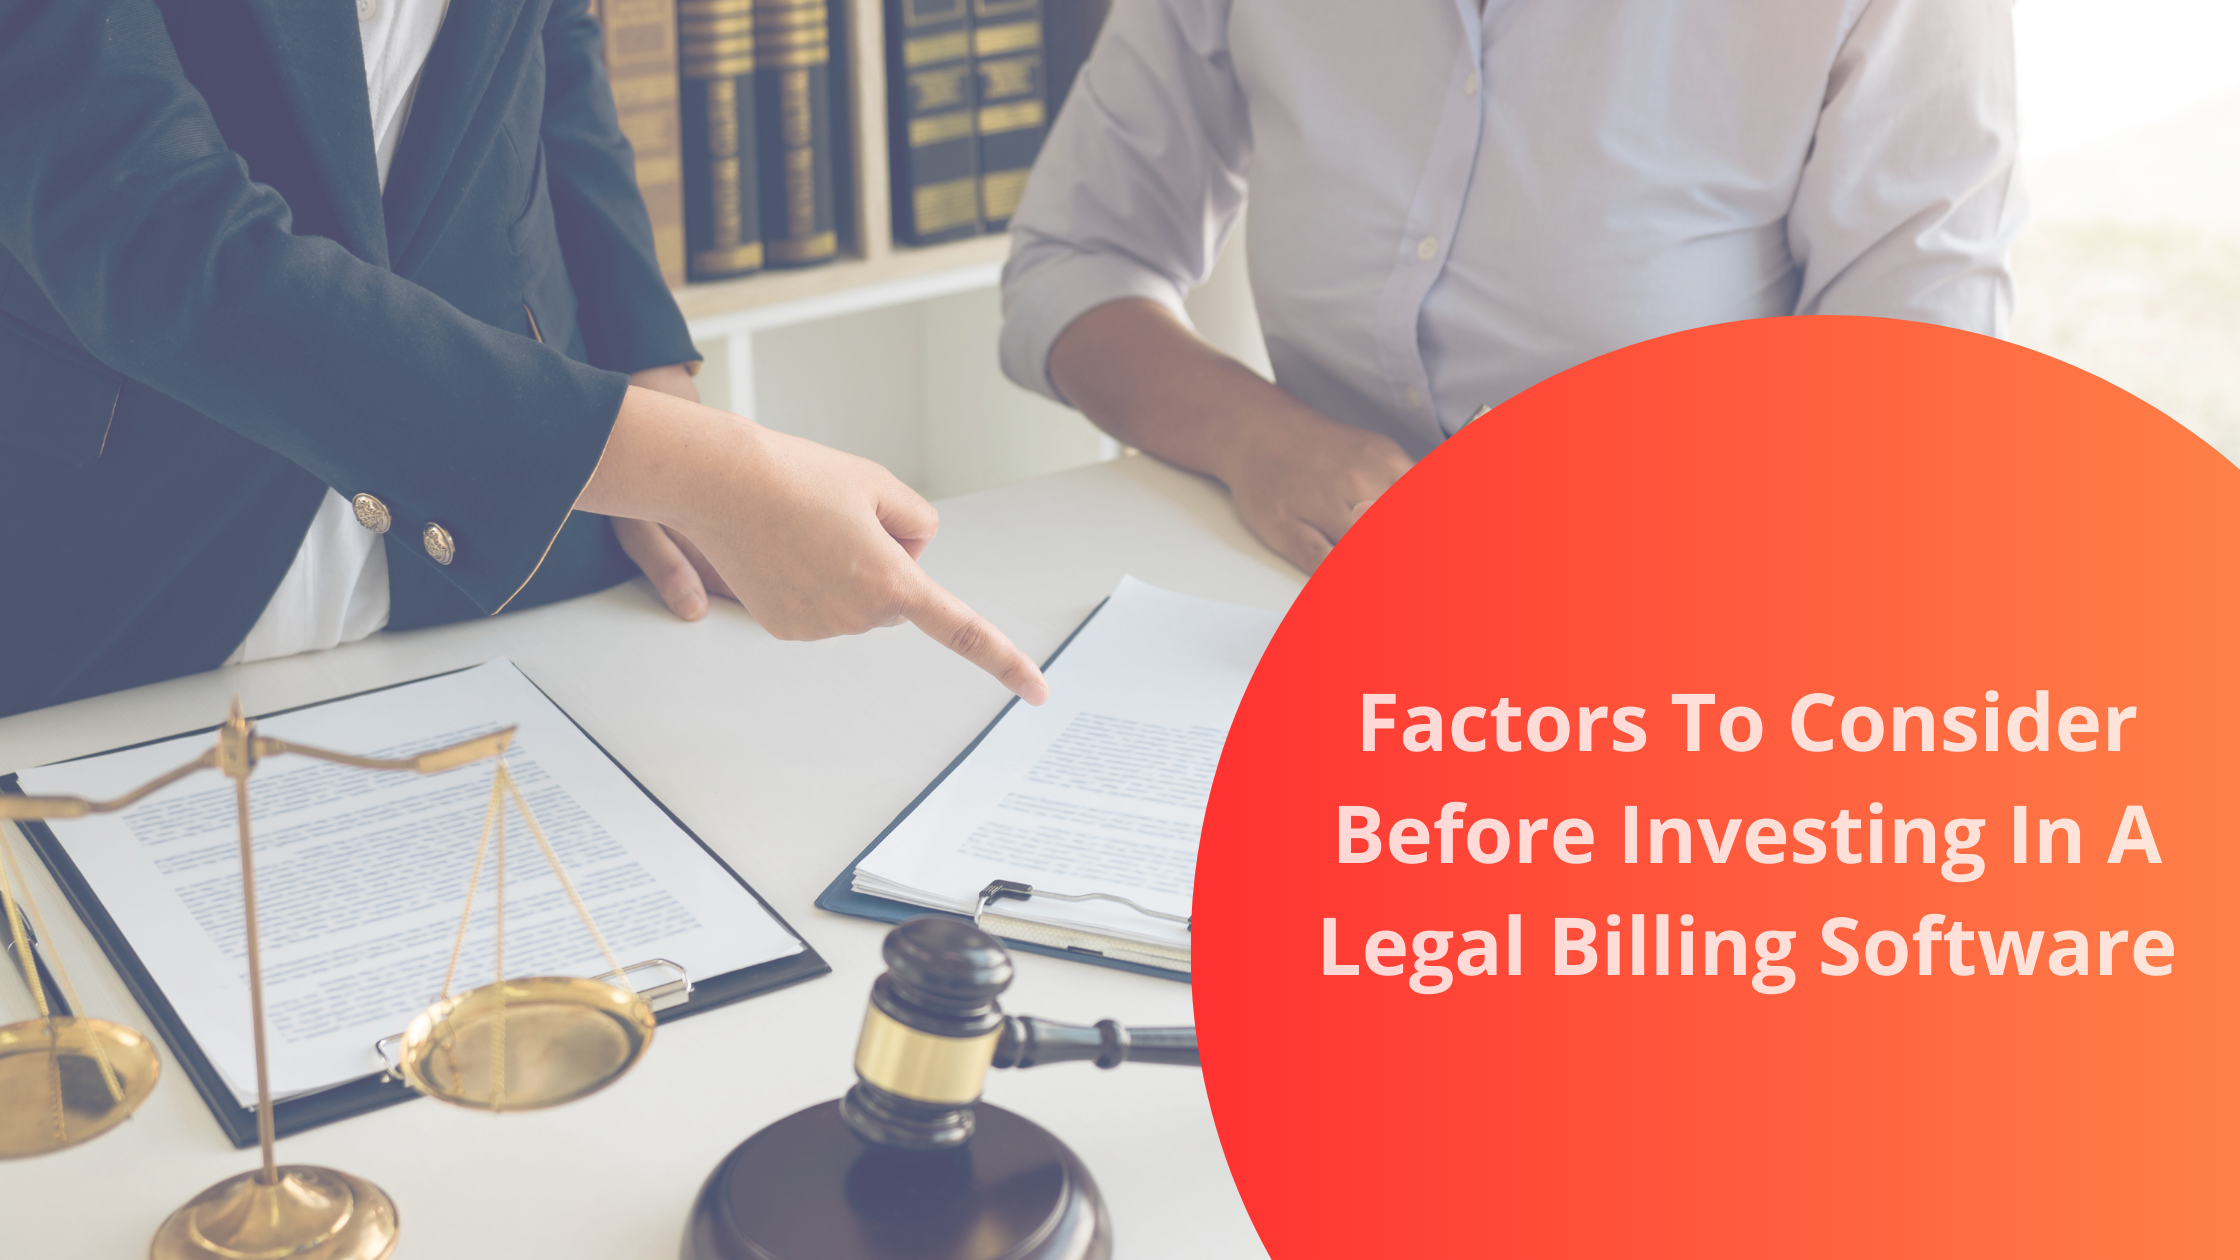 Legal billing software